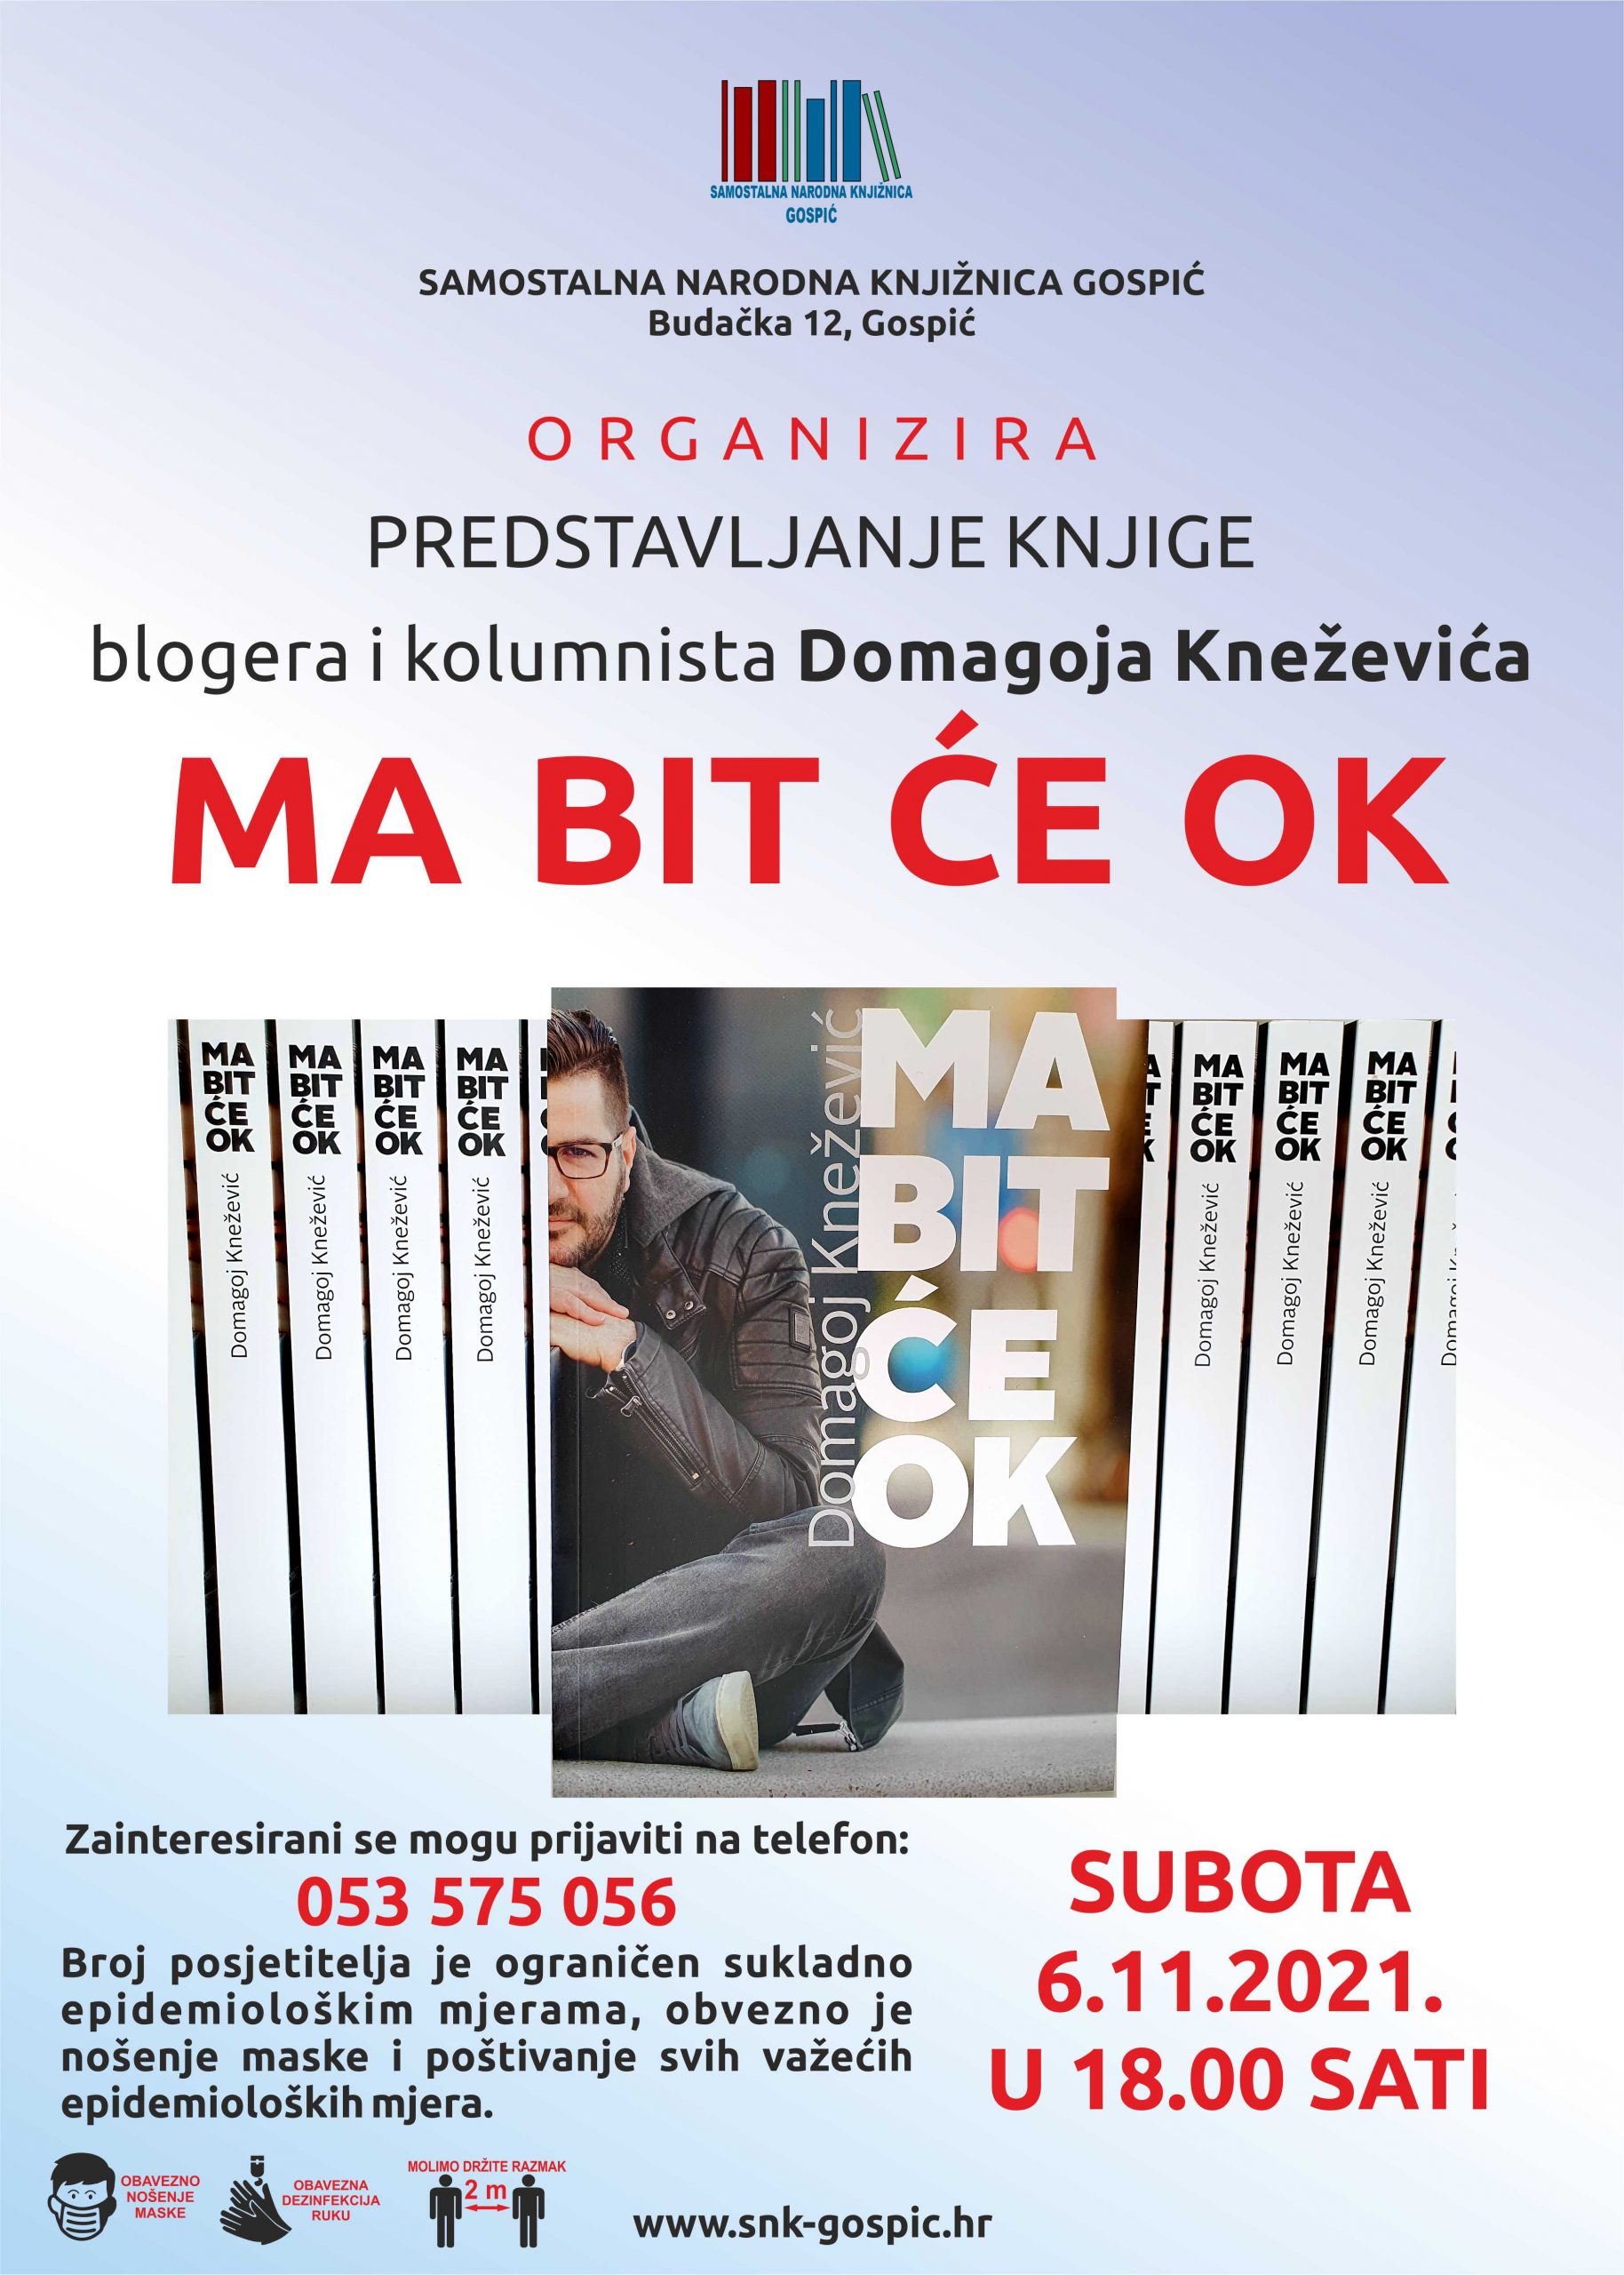 Pročitajte više o članku „MA BIT ĆE OK“ – Samostalna narodna knjižnica Gospić organizira gostovanje blogera i kolumnista Domagoja Kneževića u utorak 06.11.2021.